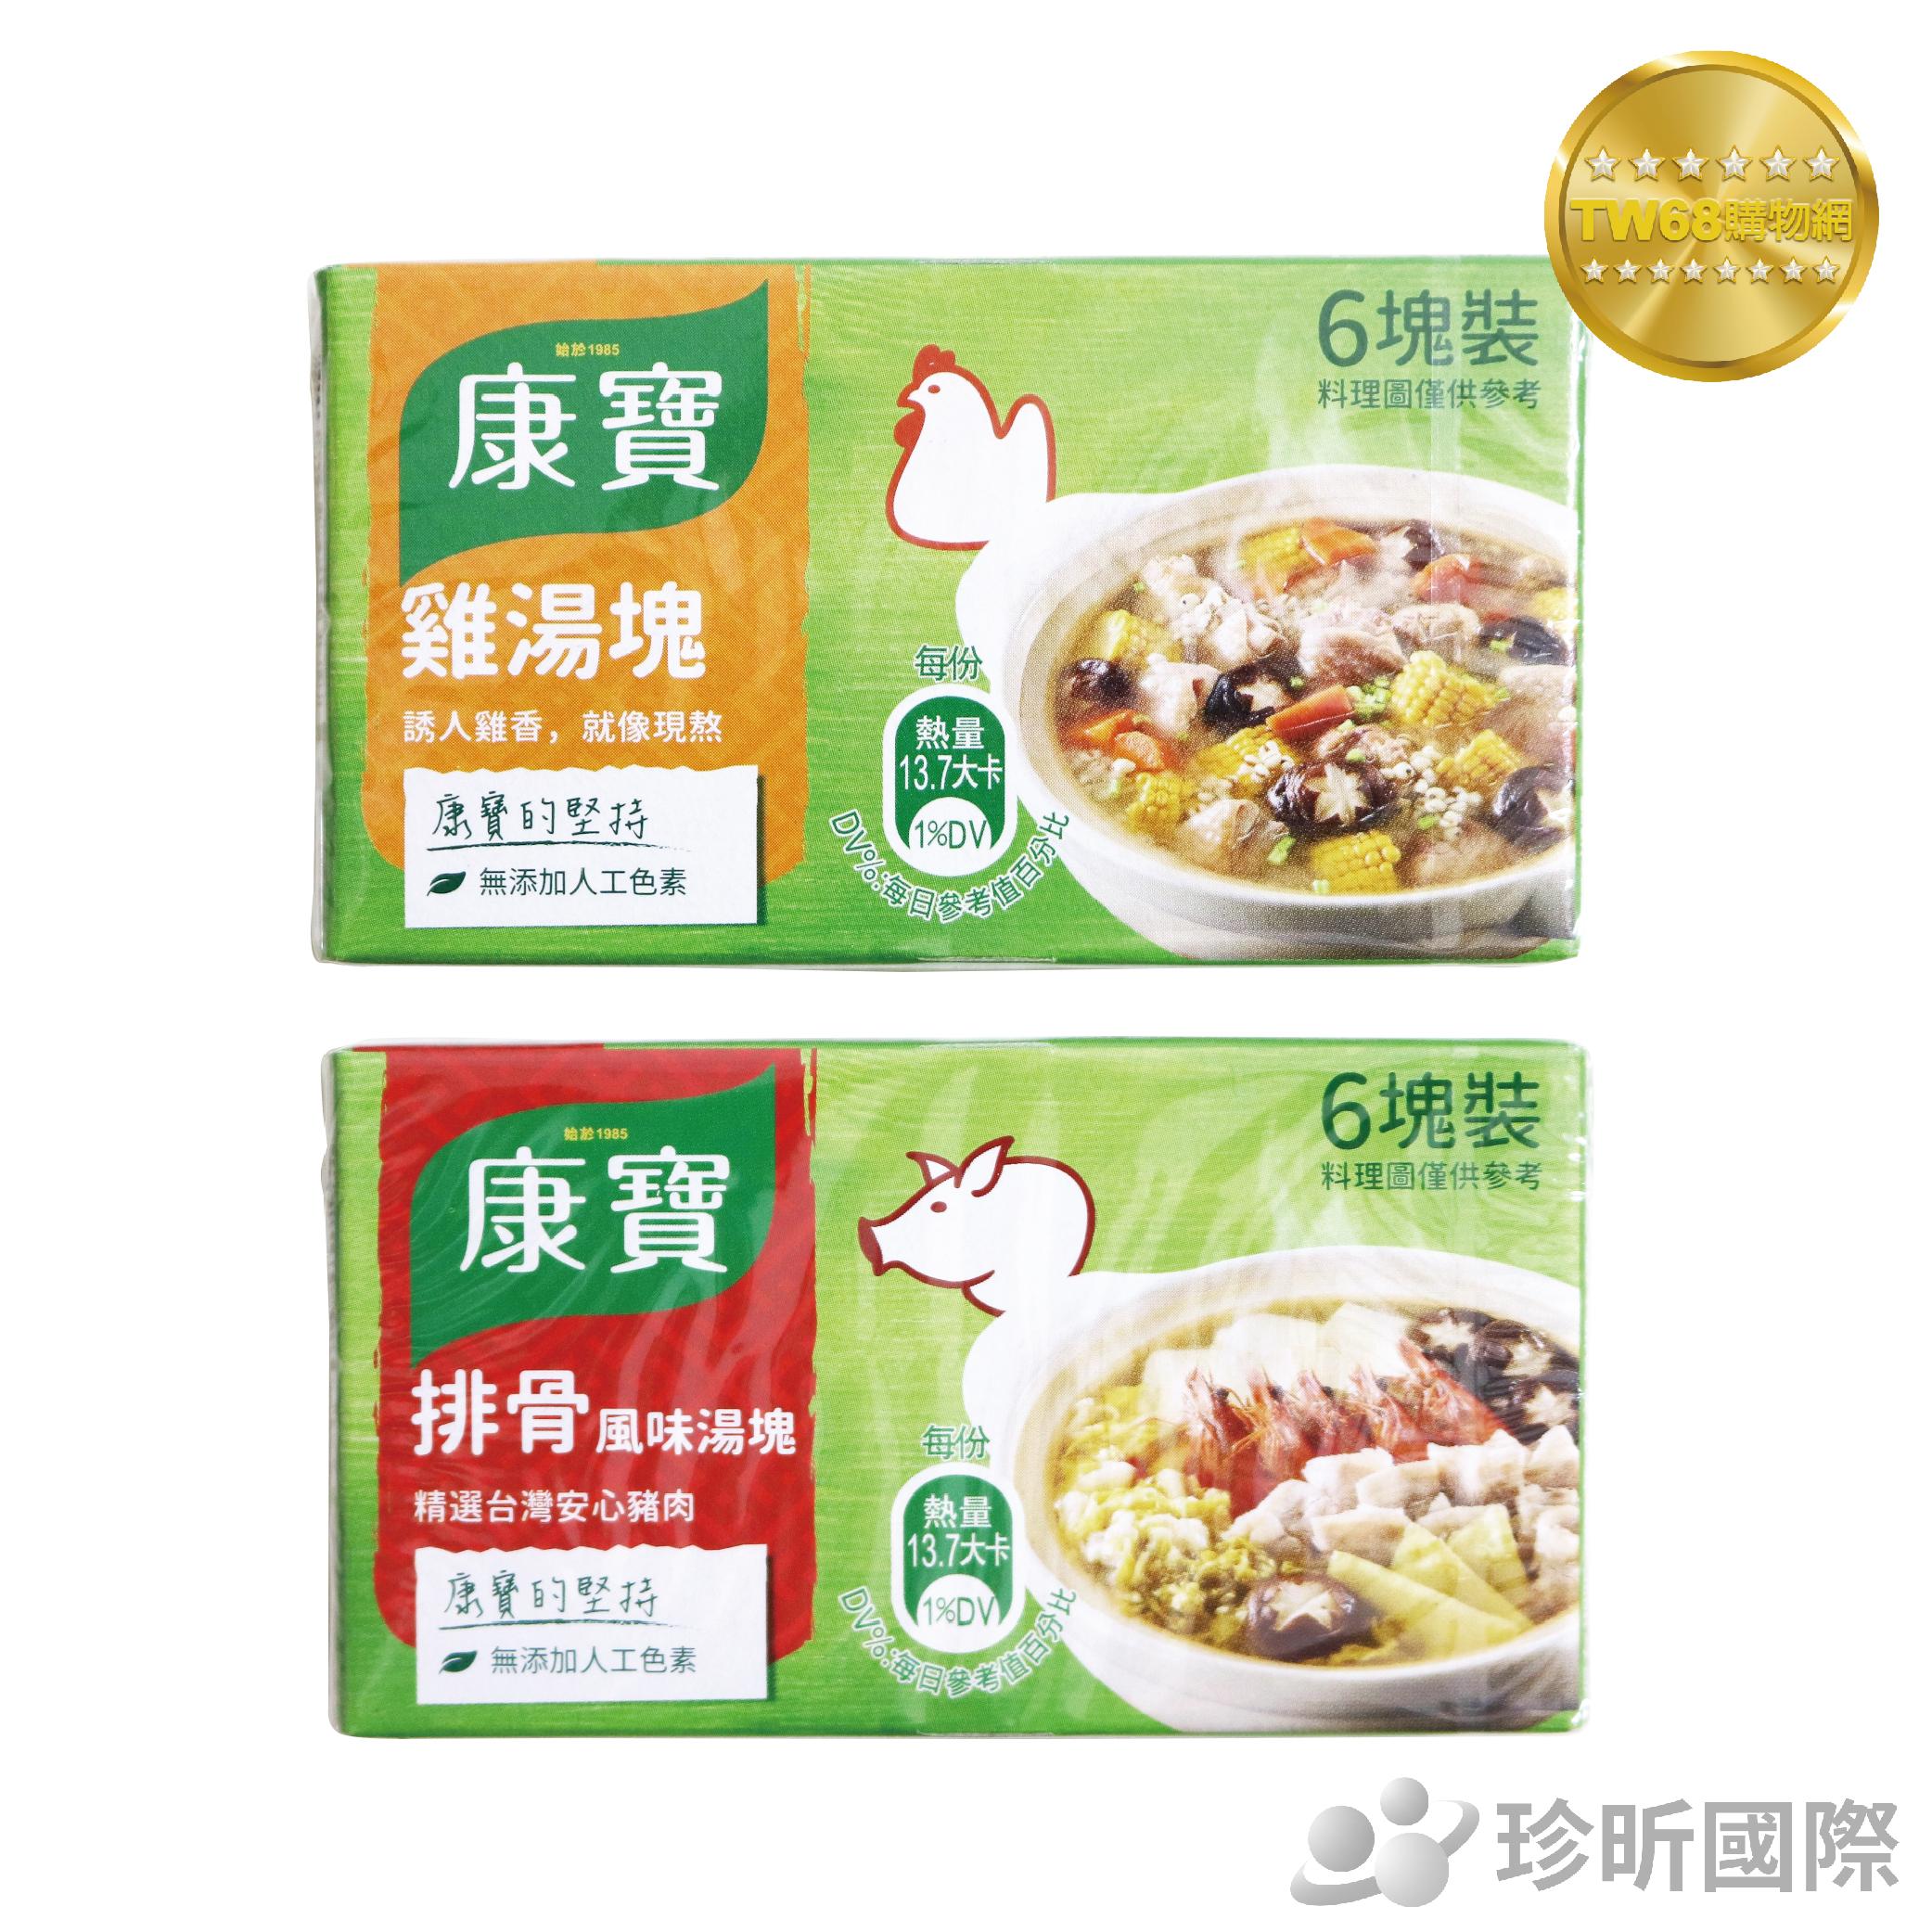 台灣現貨【TW68】台灣製 康寶 風味湯塊 排骨、雞湯 1盒6塊共60g 濃湯塊 料理包 康寶風味湯塊